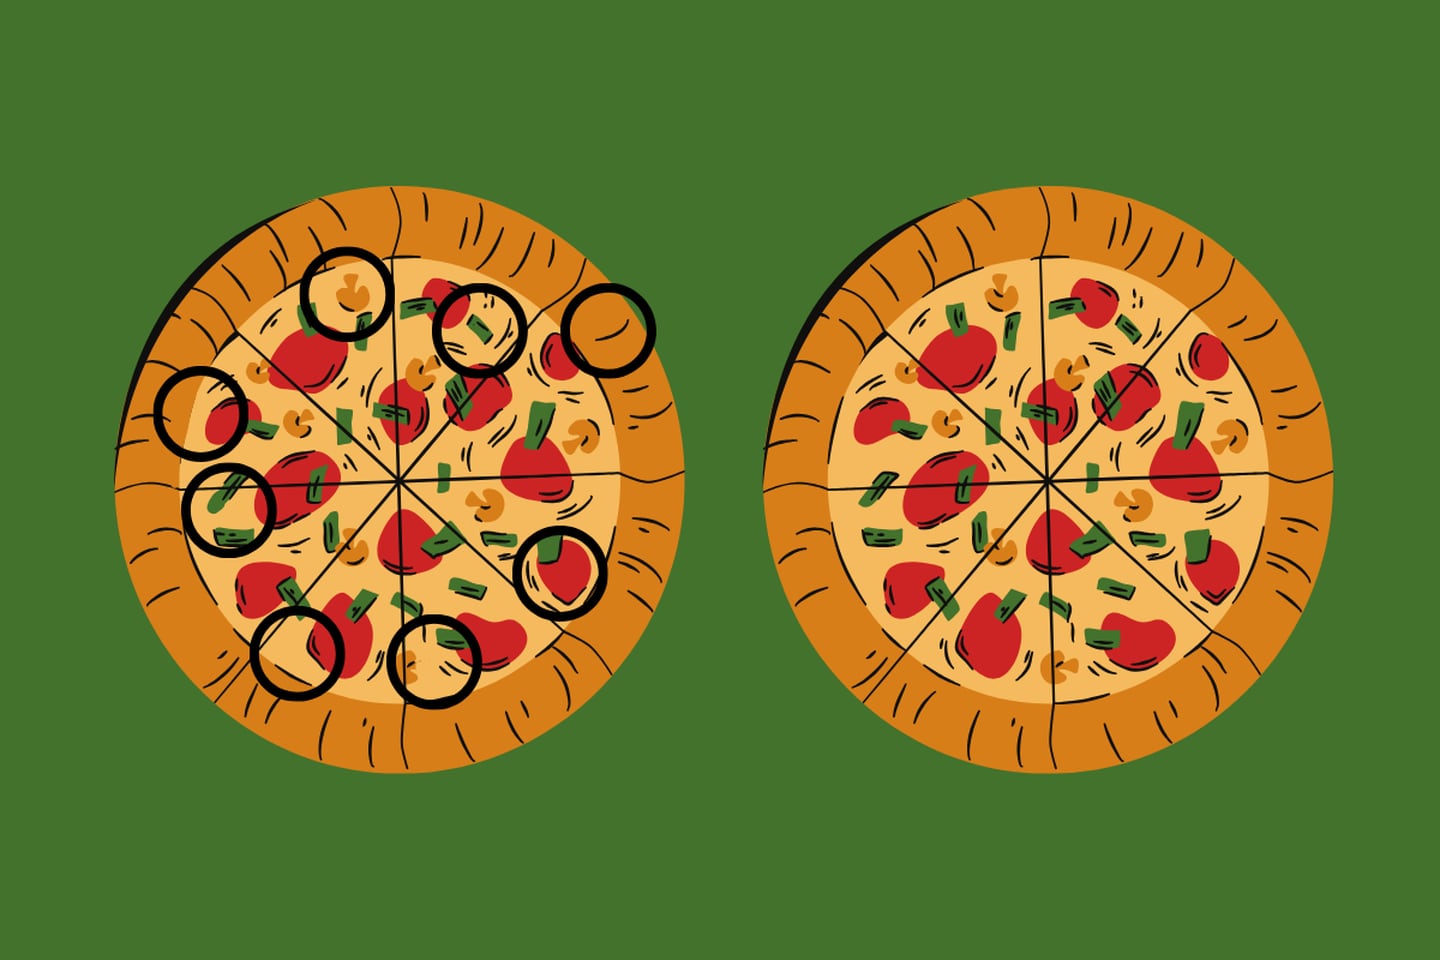 En este test visual hay dos pizzas que parecen iguales, pero hay 8 diferencias entre ellas.